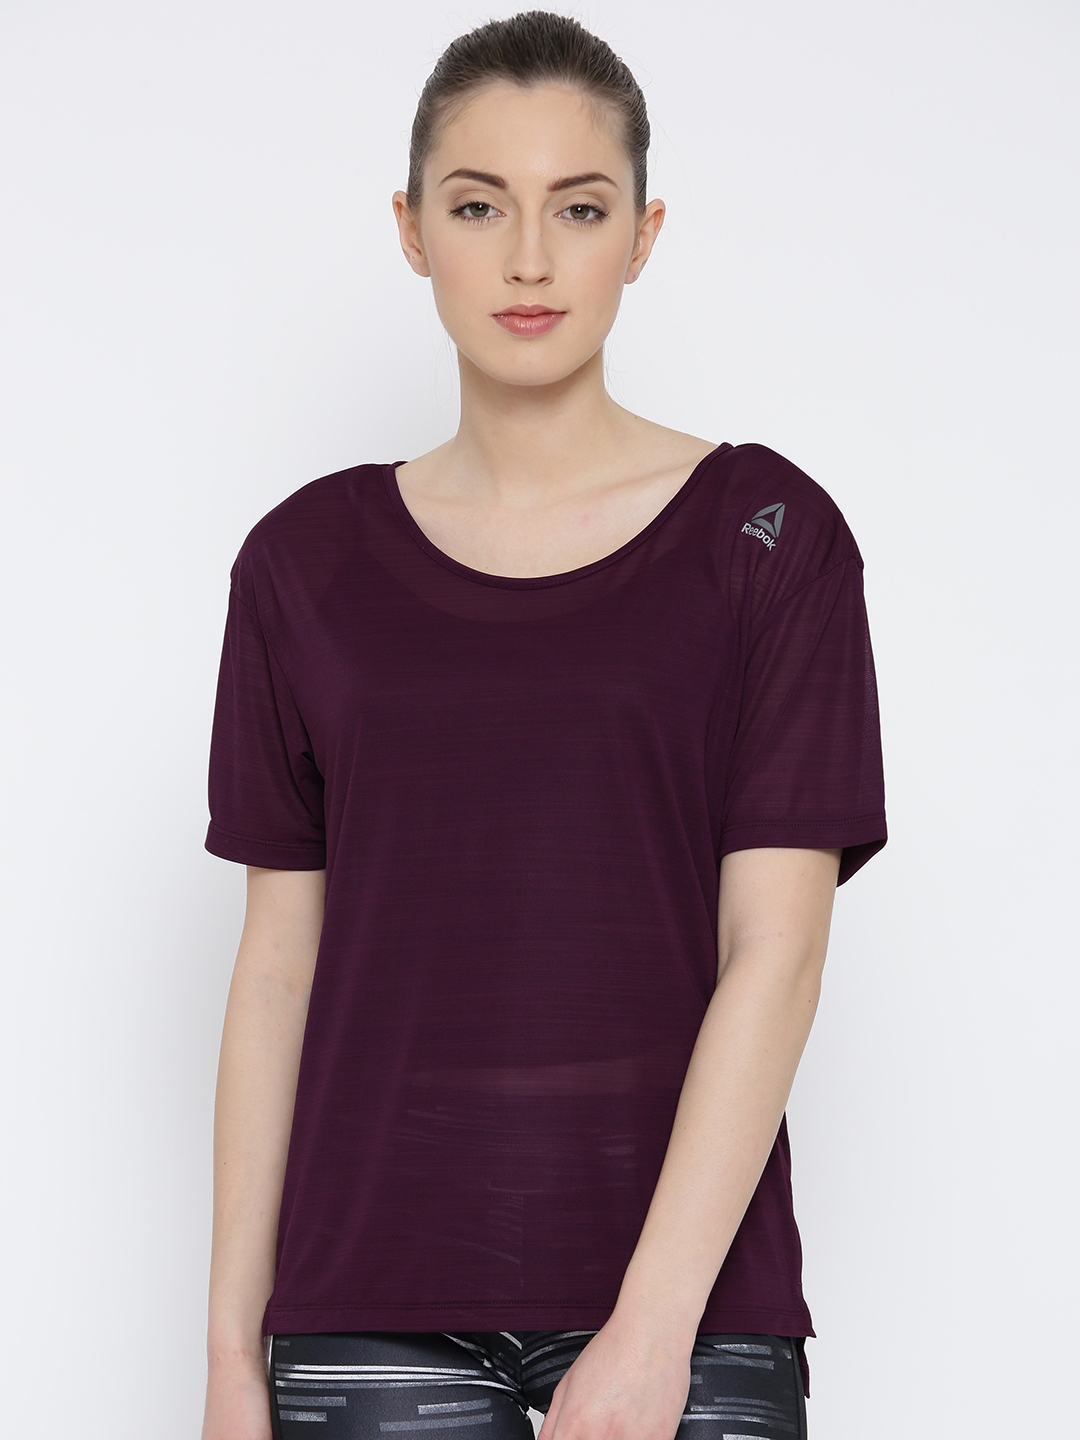 reebok shirts womens purple